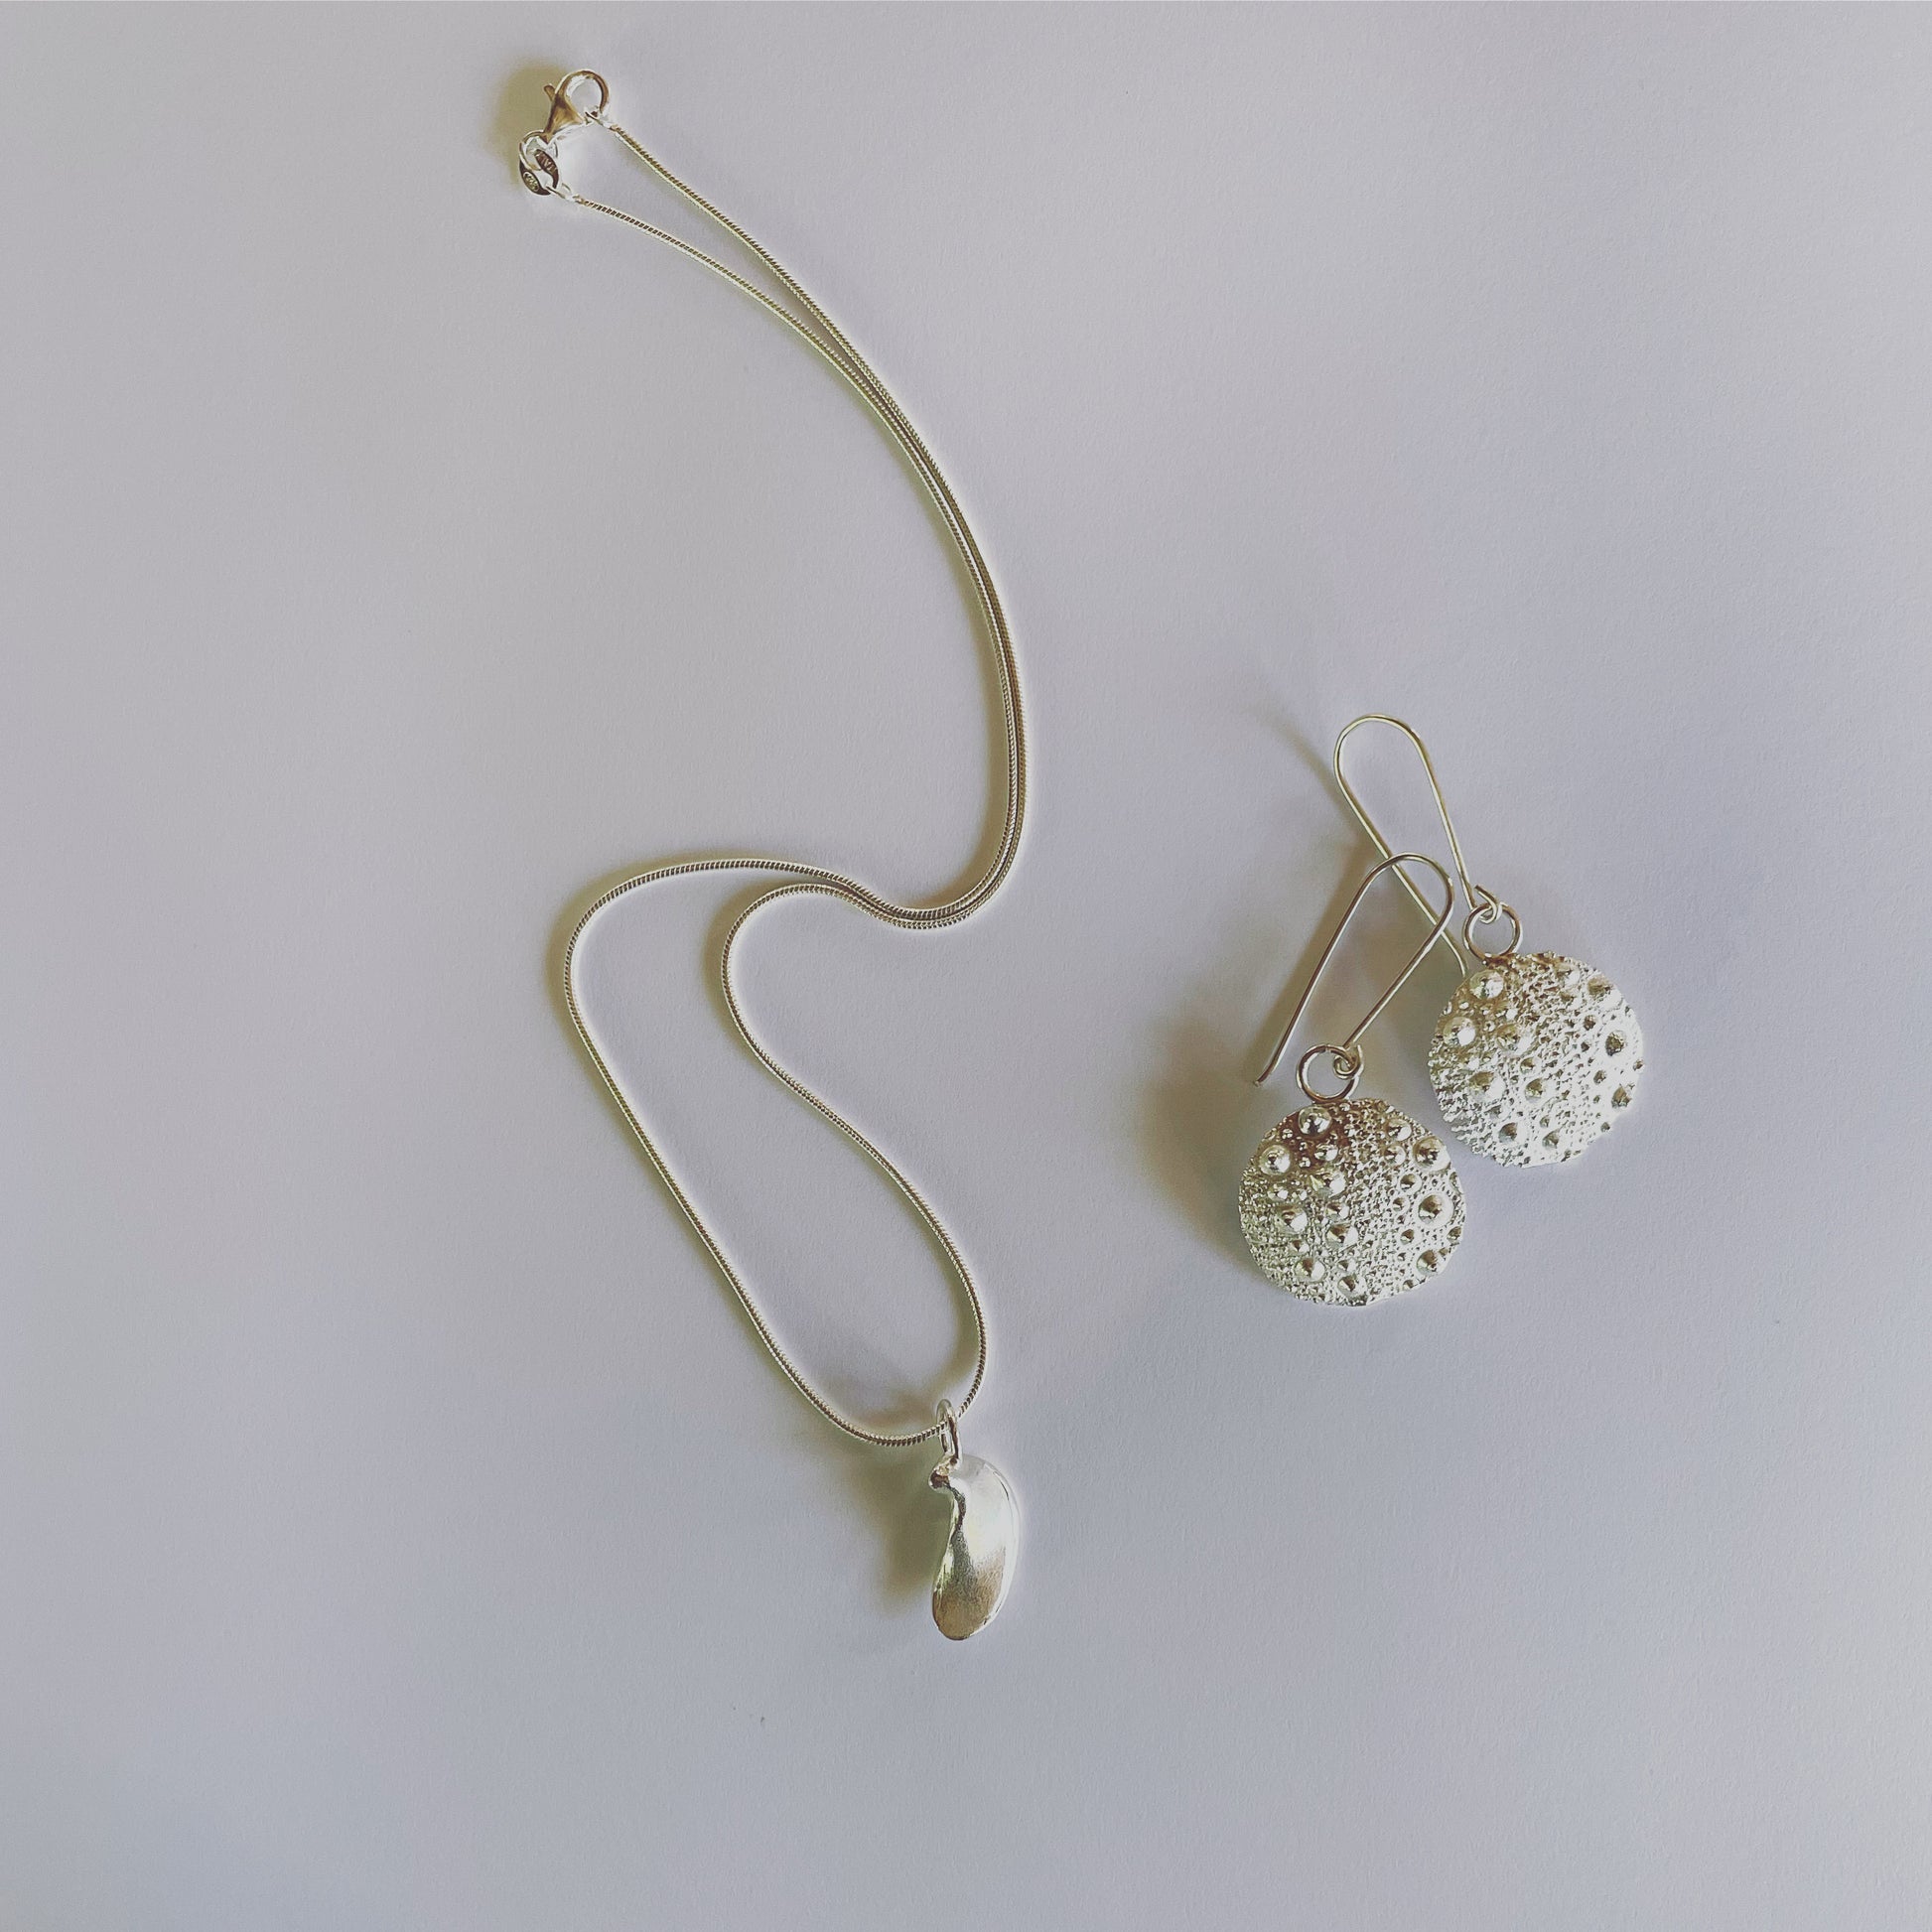 Neive earrings in silver, Sea Urchin earrings with Nimüe pendant